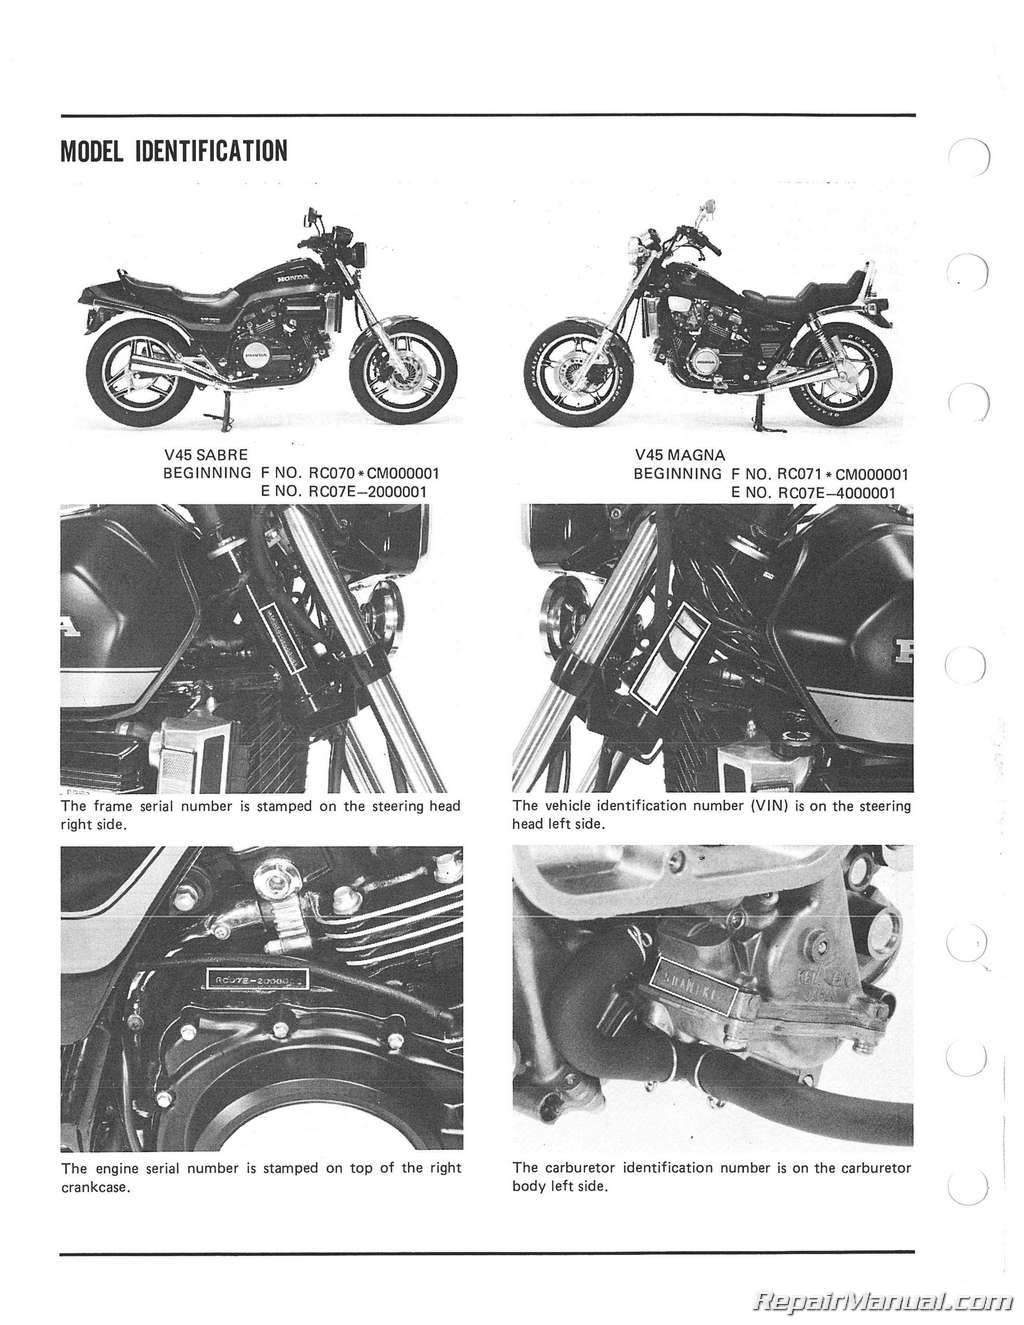 1984 Honda vf700c manual #2